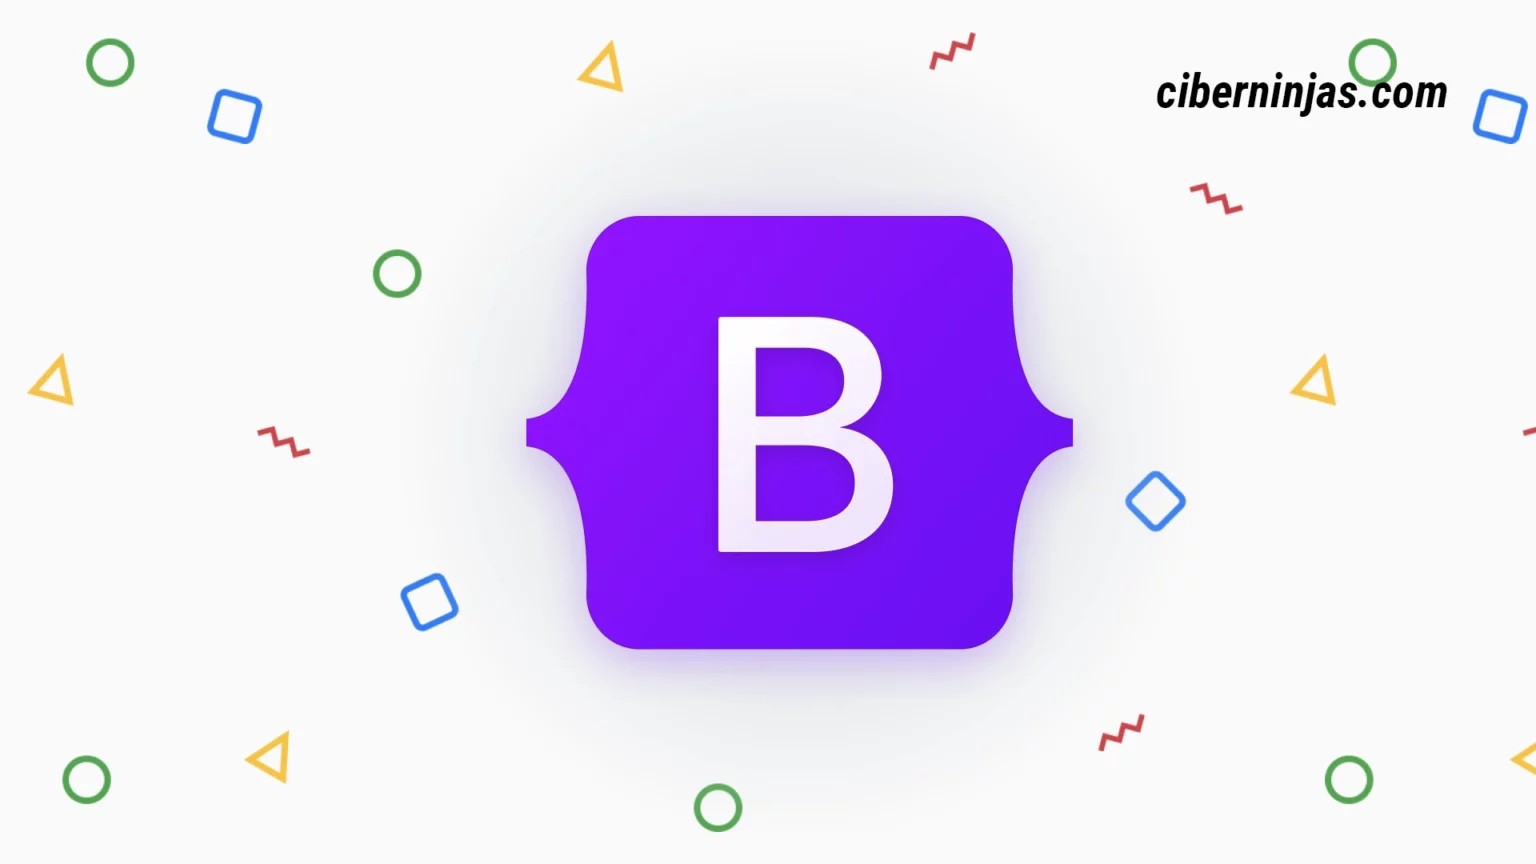 Bootstrap 5.2.0 agrega soporte para CSS y agrega componentes personalizados